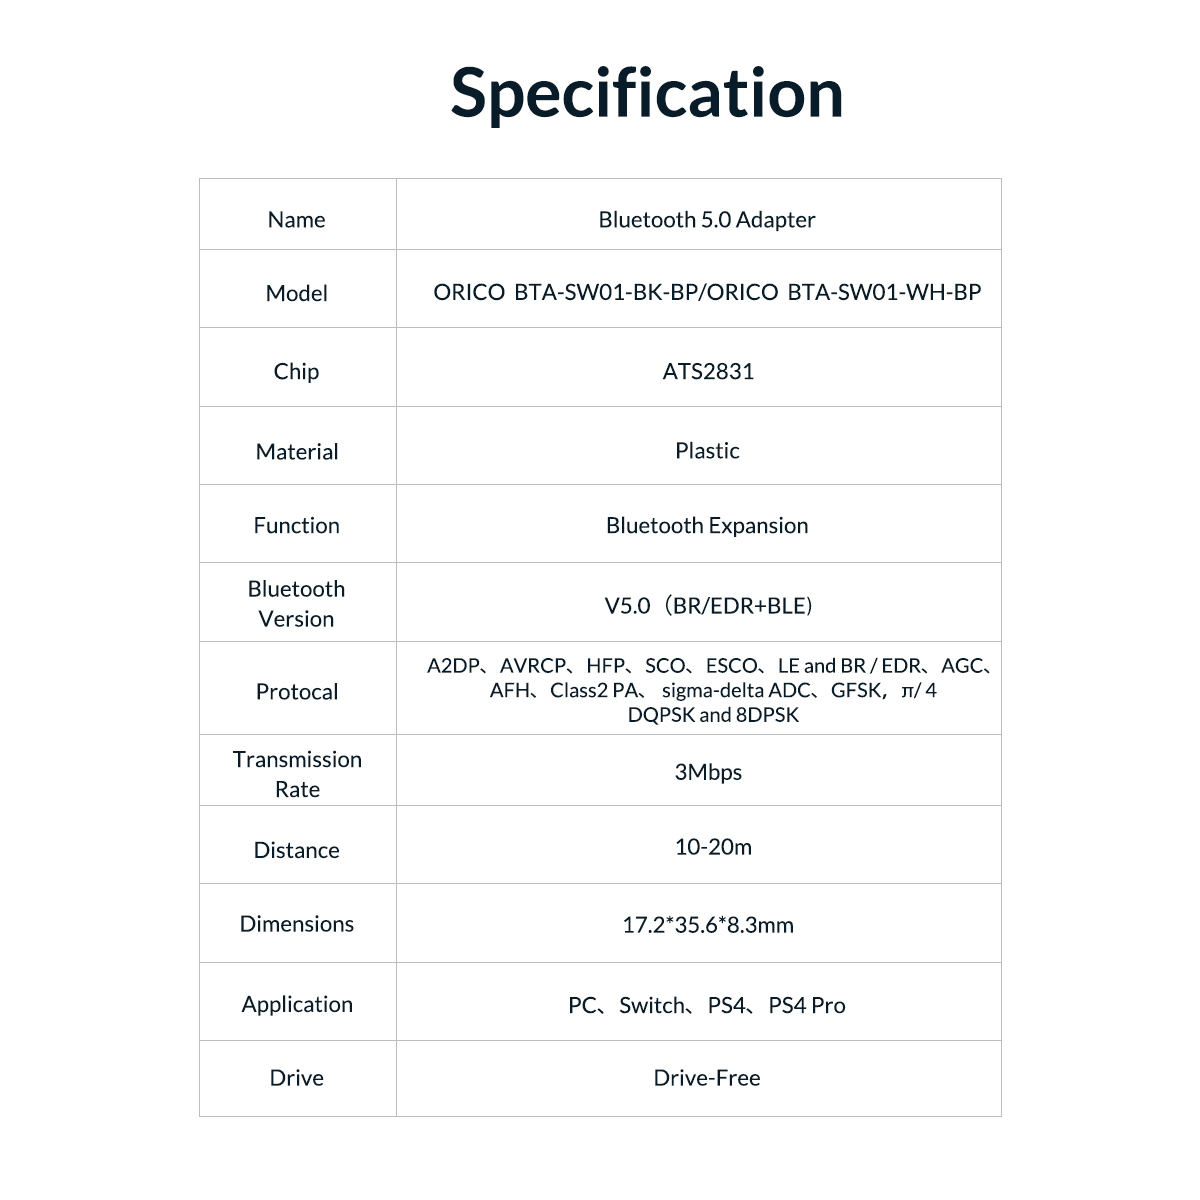 Adaptateur Bluetooth 5.0 pour Switch, PC, PS4, PS4 Pro - Orico